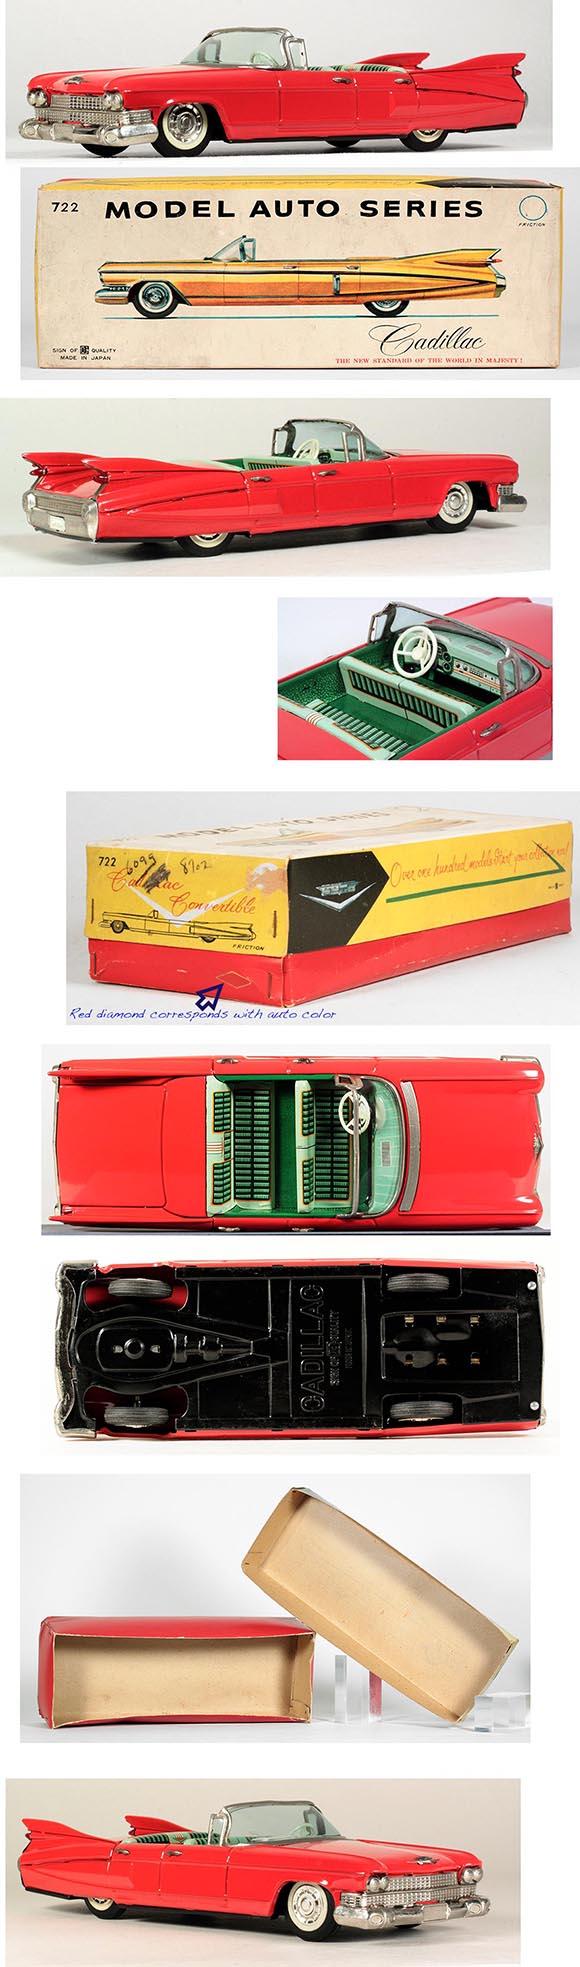 1959 Bandai Cadillac 4-dr Convertible in Original Box